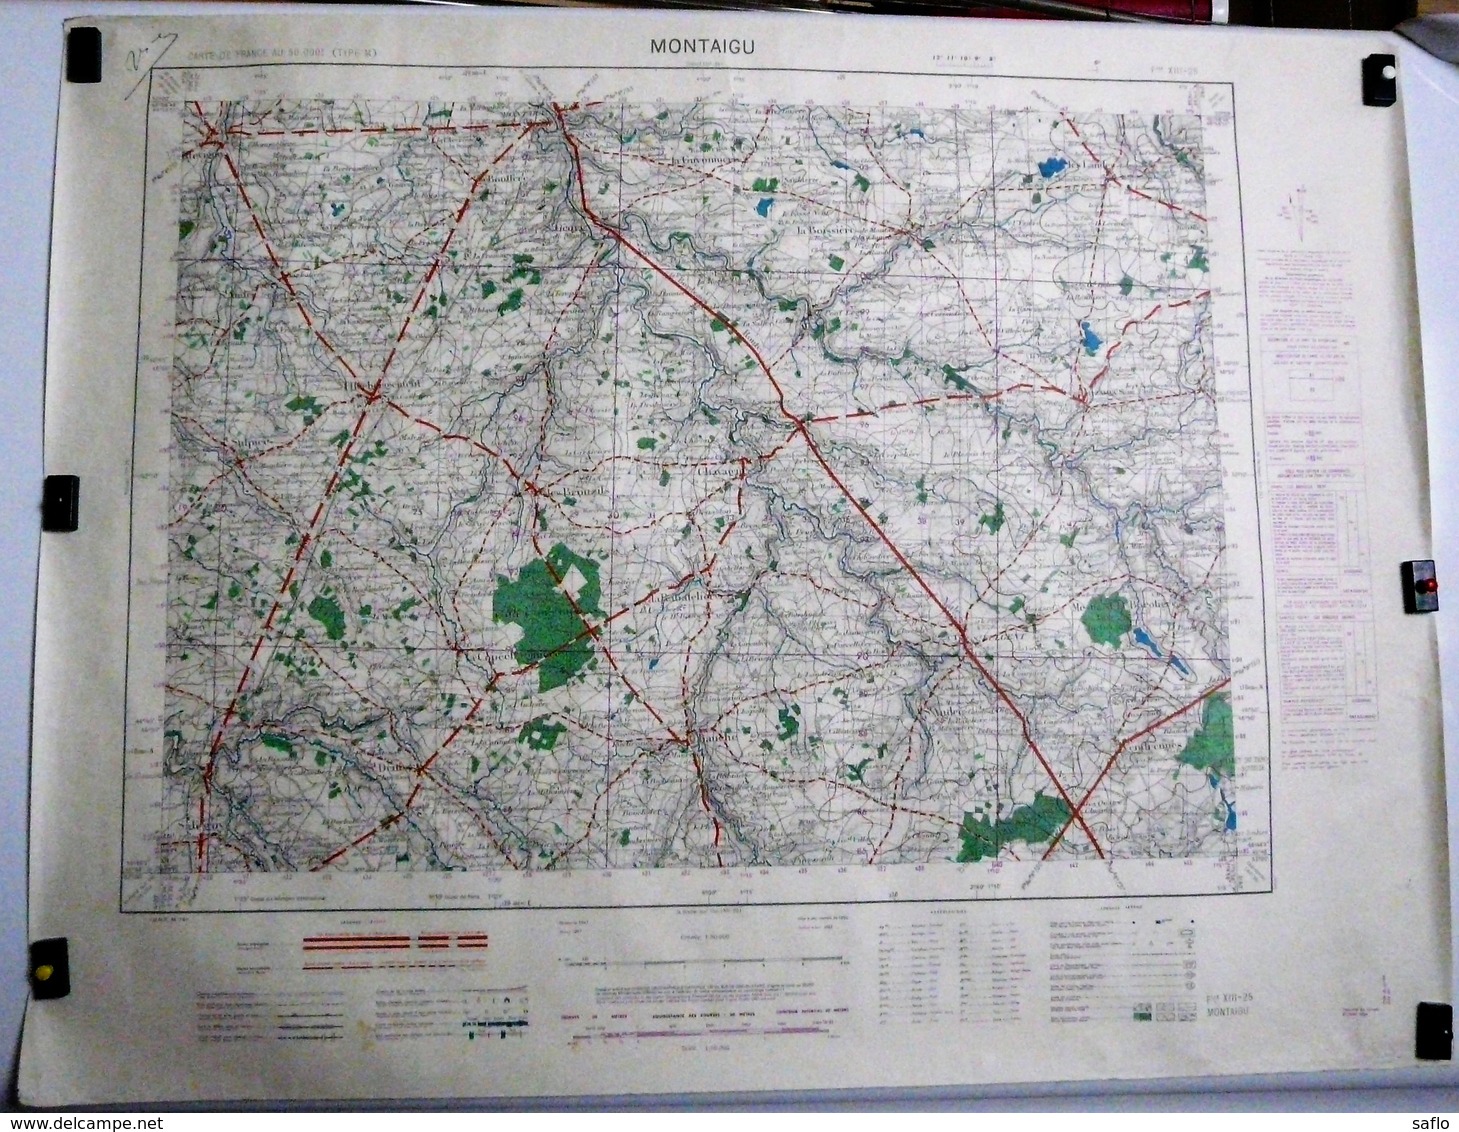 Carte Etat Major Montaigu  (Vendée) Type M - 1/50000ème Feuille XIII - 25  Institut Géographique National (IGNF) 1952 - Cartes Topographiques